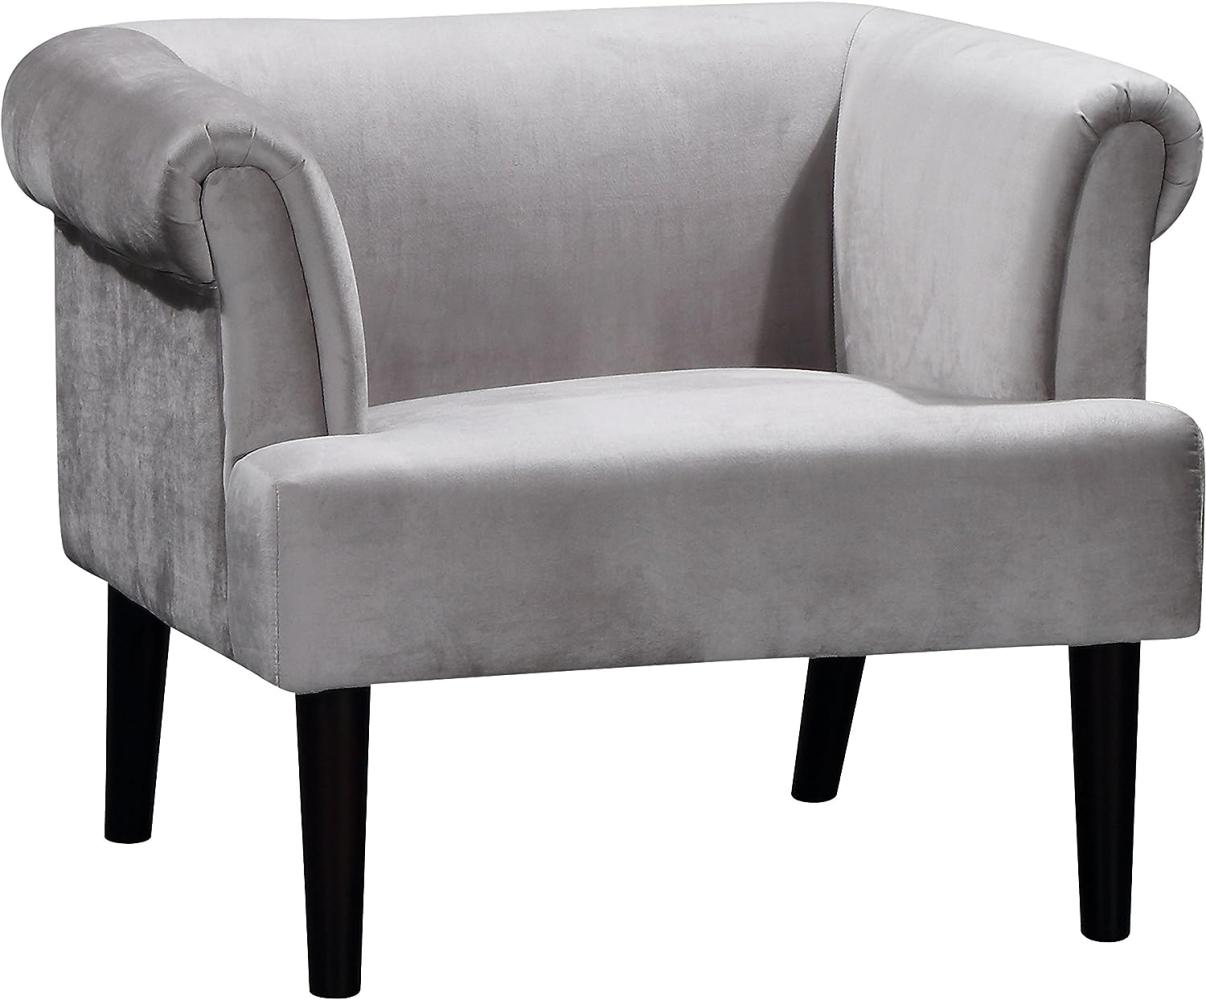 ATLANTIC home collection Sessel – Preisvergleich | günstig bei CHECK24  kaufen